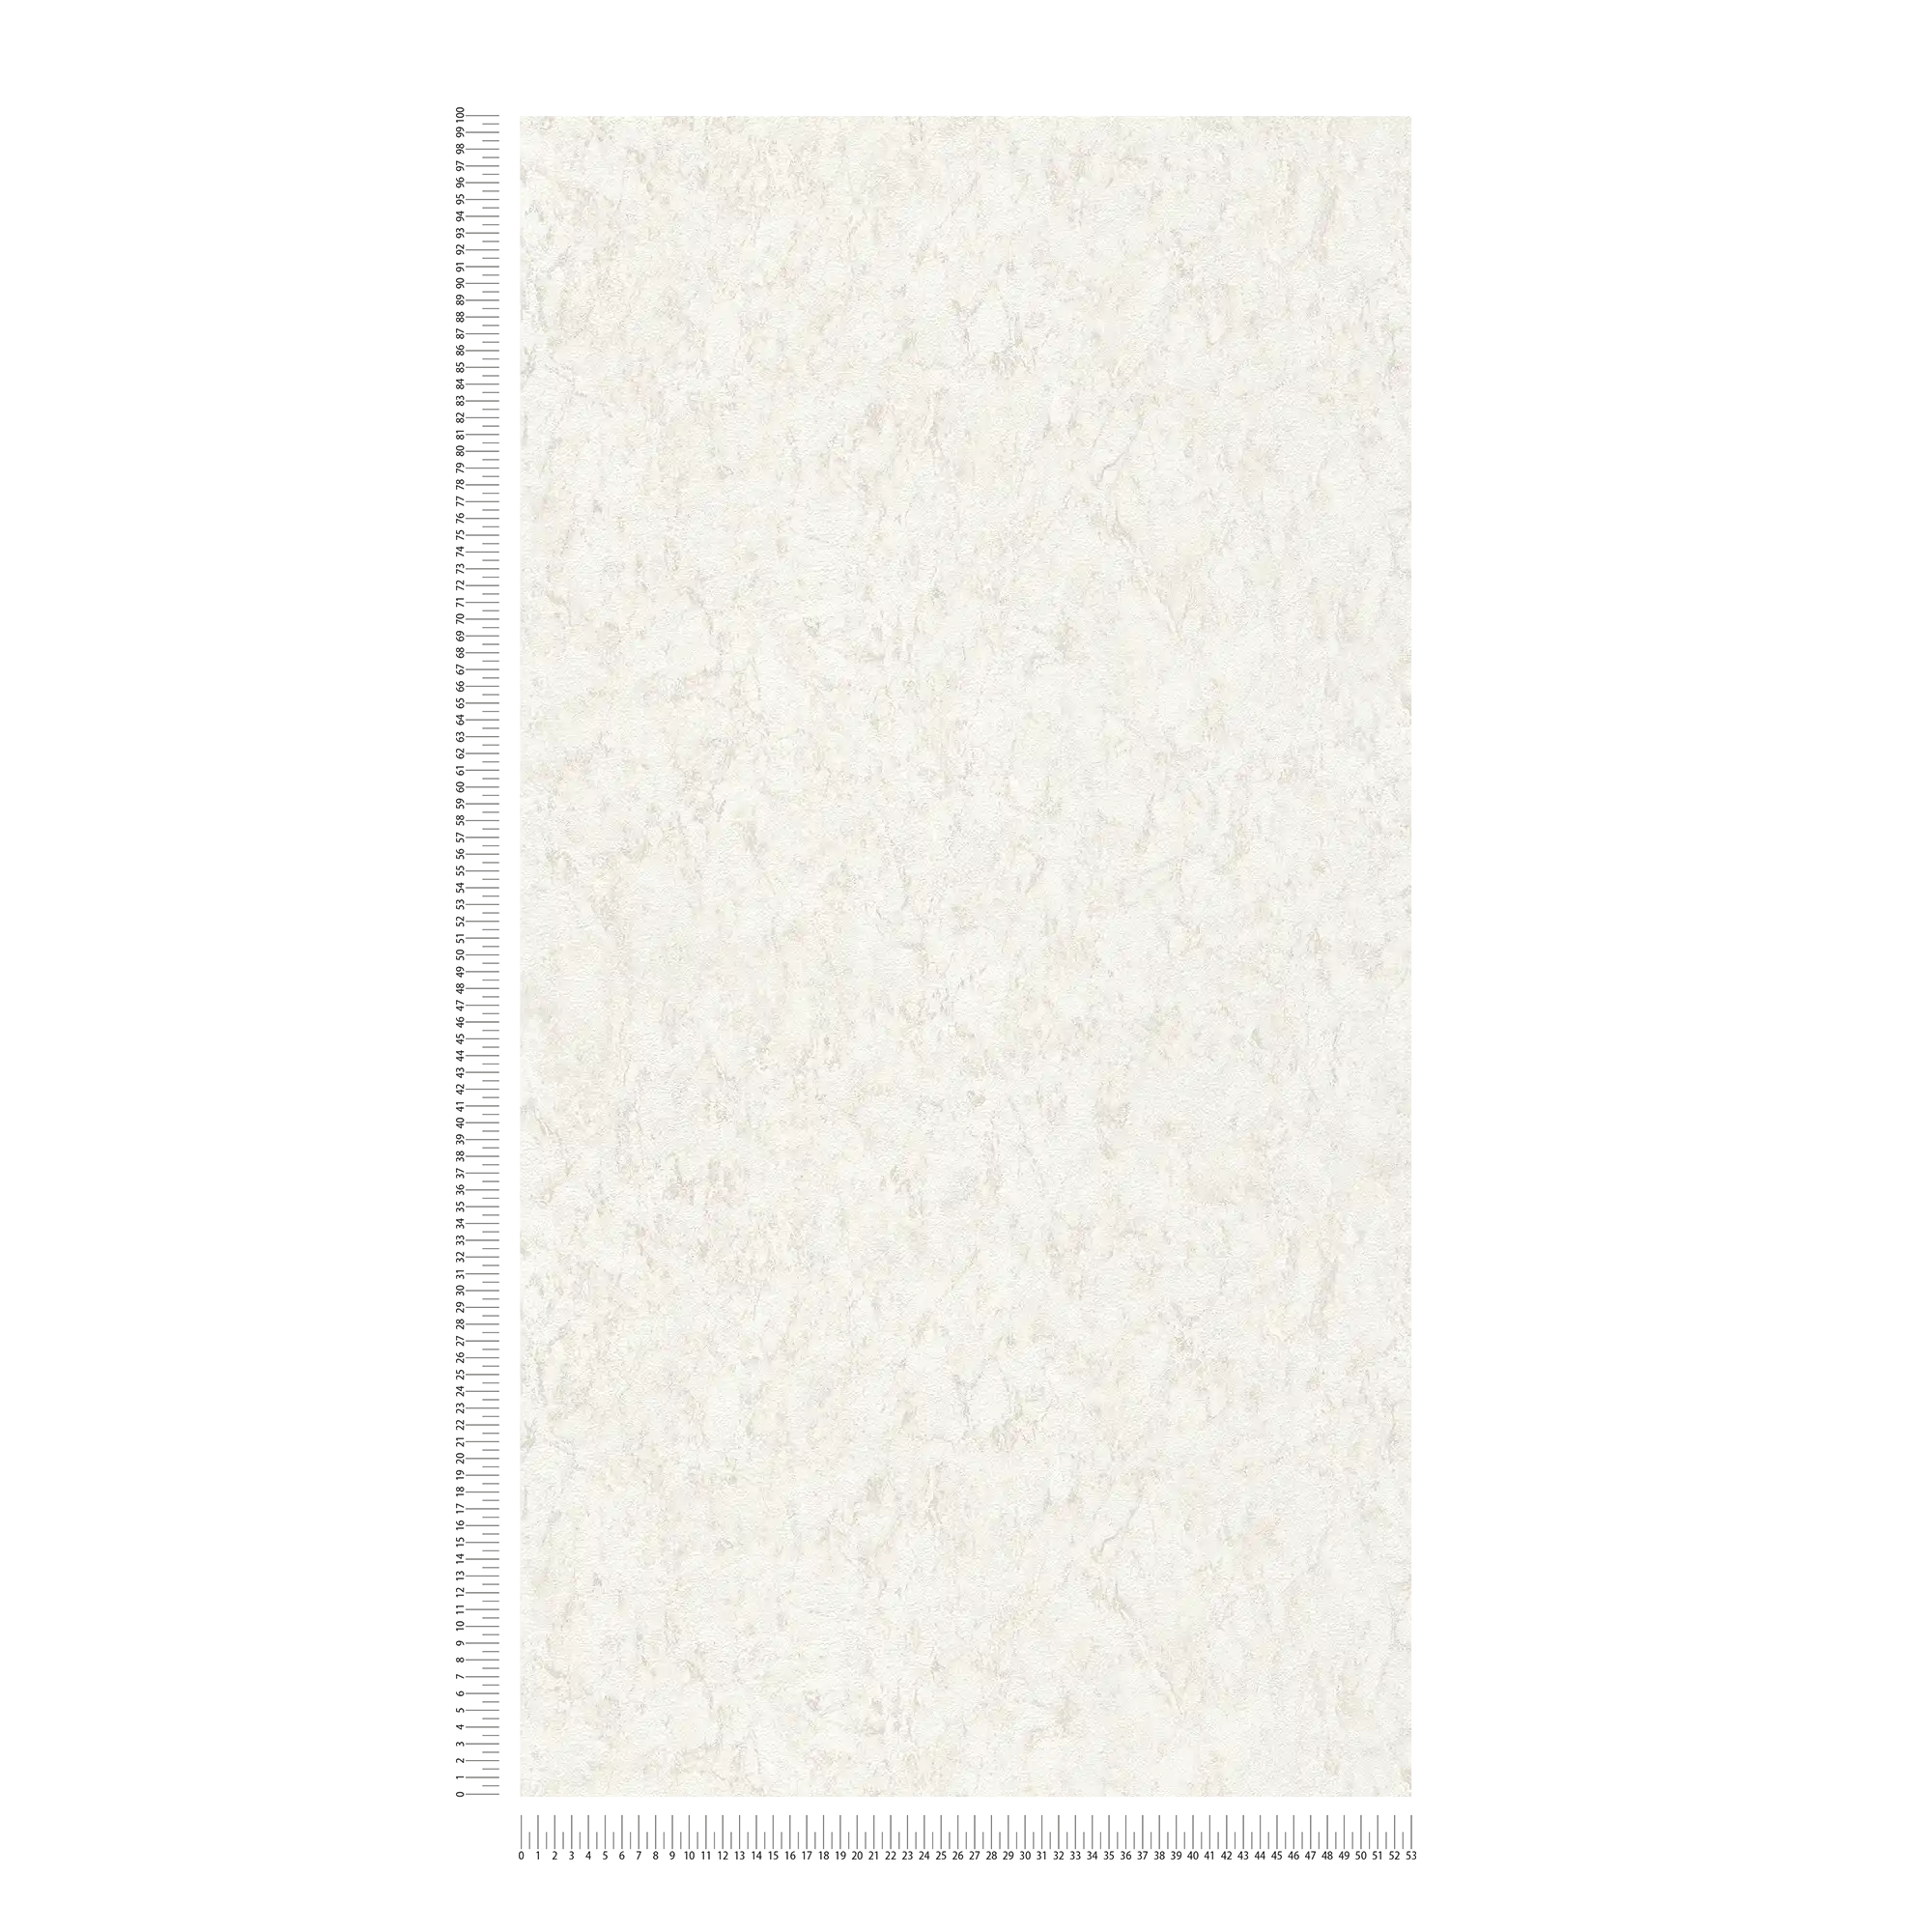             Papel pintado unitario con efecto texturizado y diseño moteado - blanco, gris
        